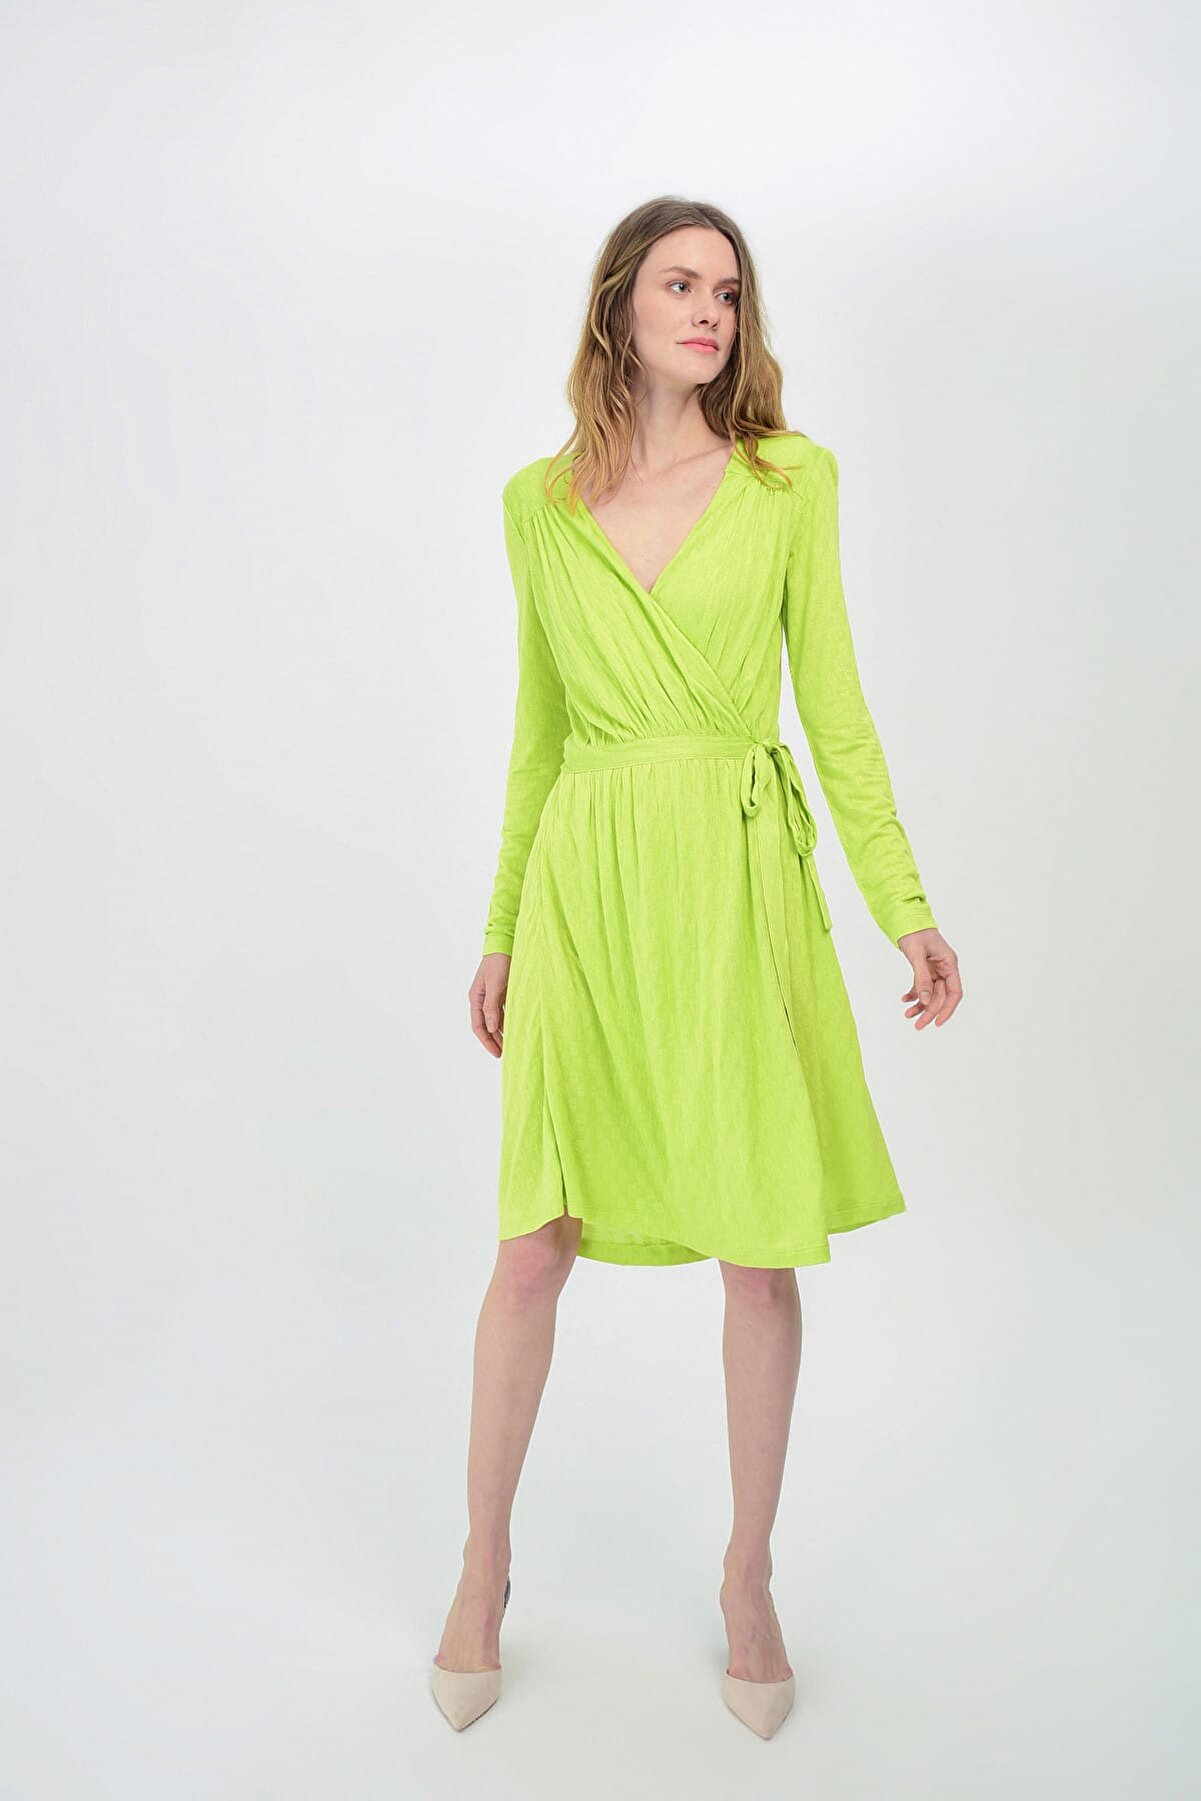 Hanna's Kadın Yeşil Uzun Kollu Kruvaze Önden Bağlamalı Örme Elbise Hn1532